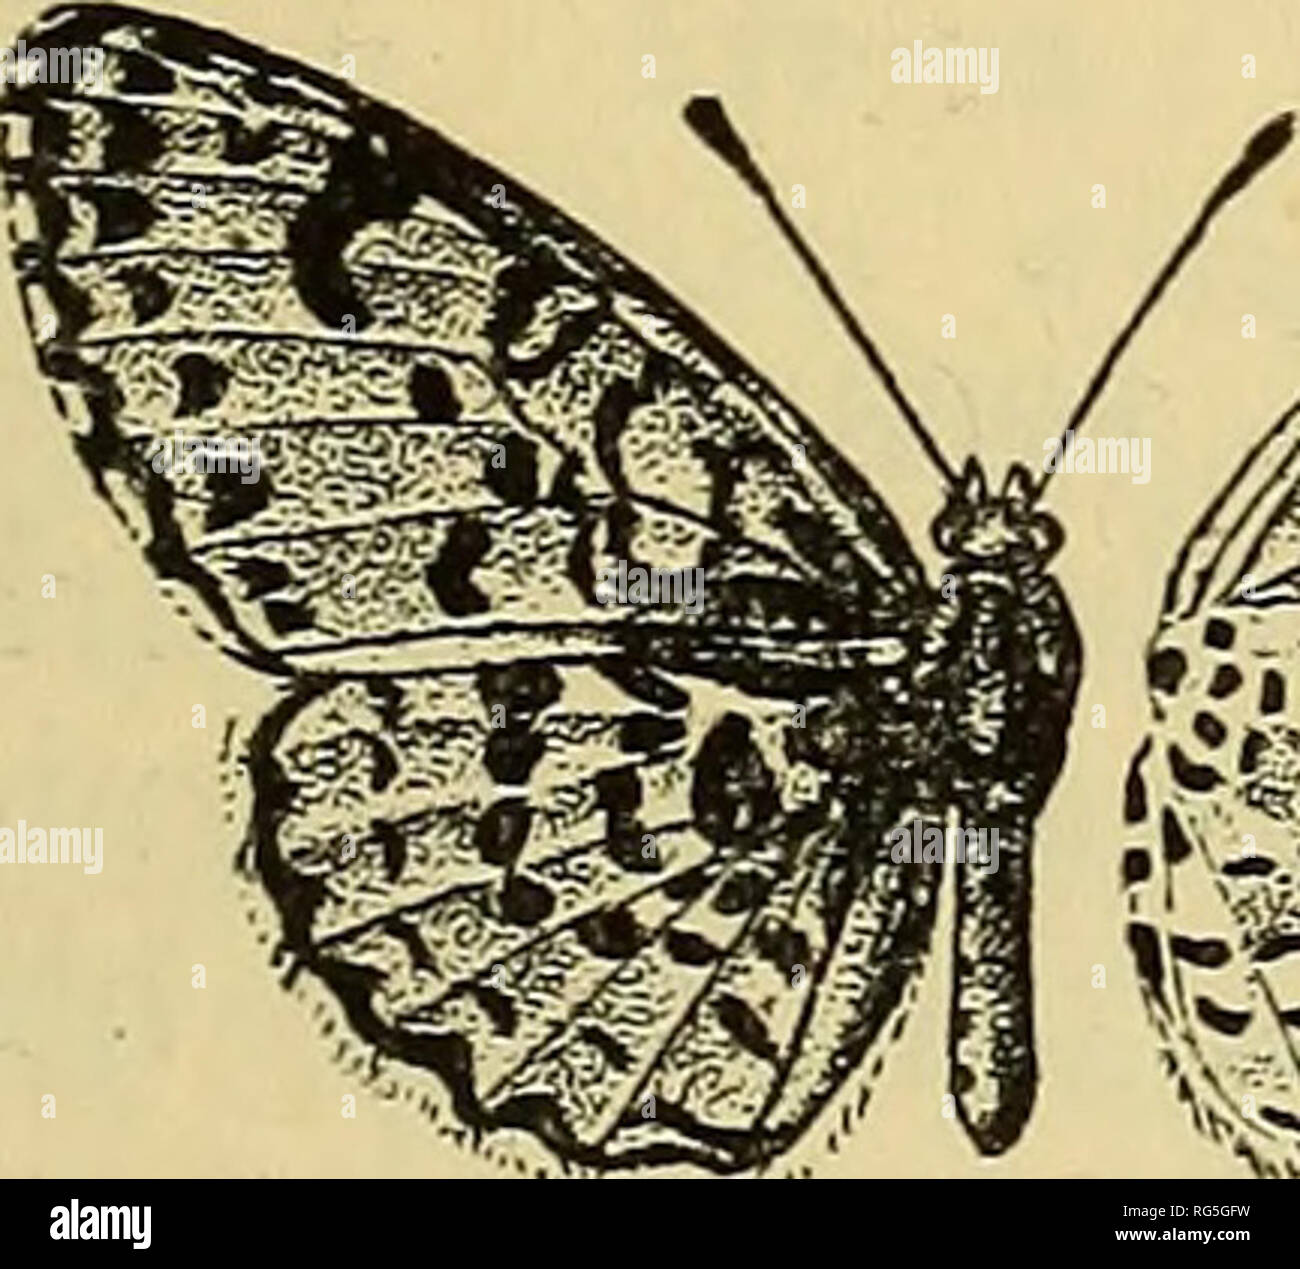 Las alas de los lepidópteros, primera parte: la forma